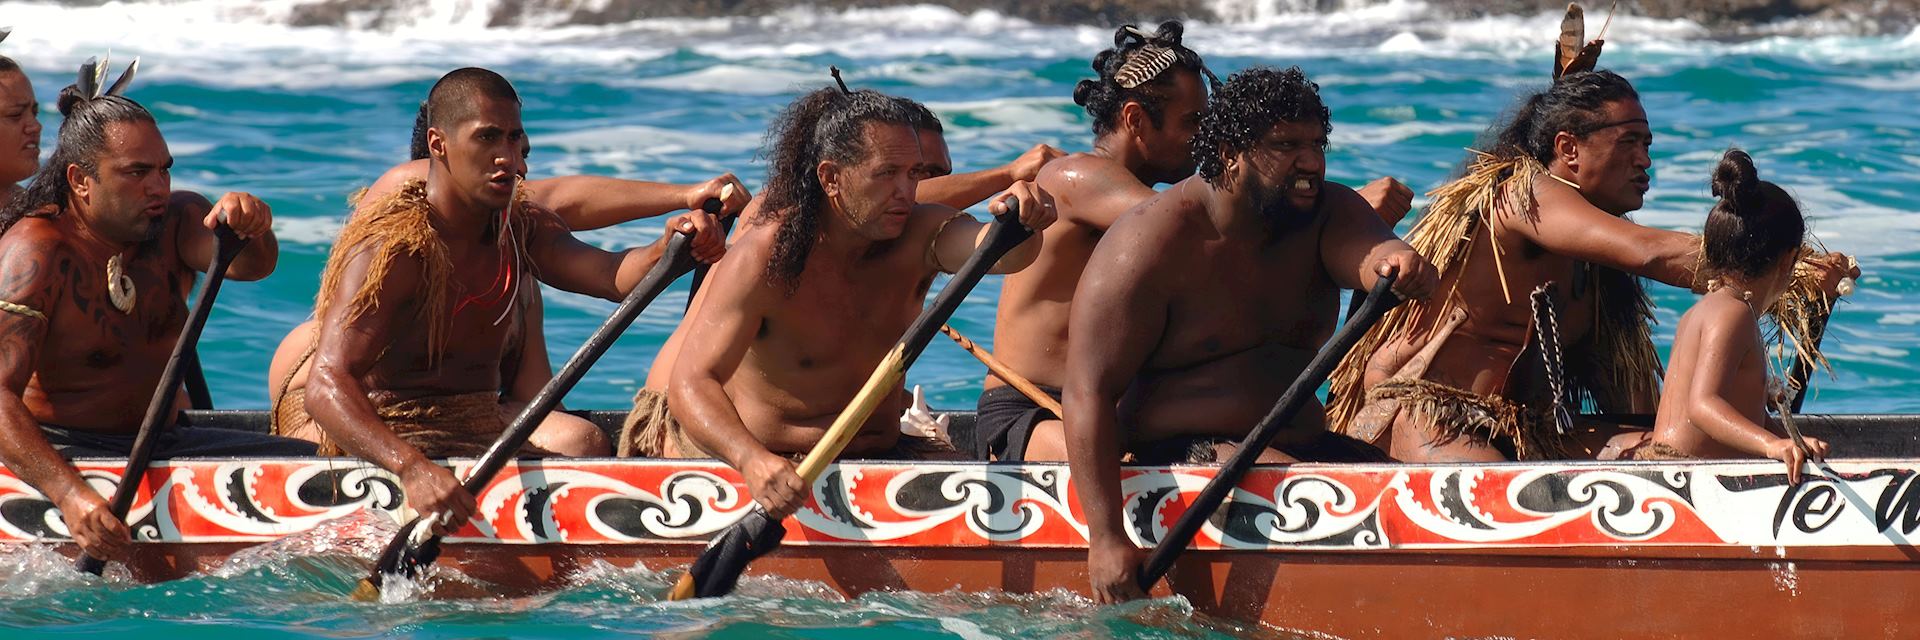 Maori warriors in a waka